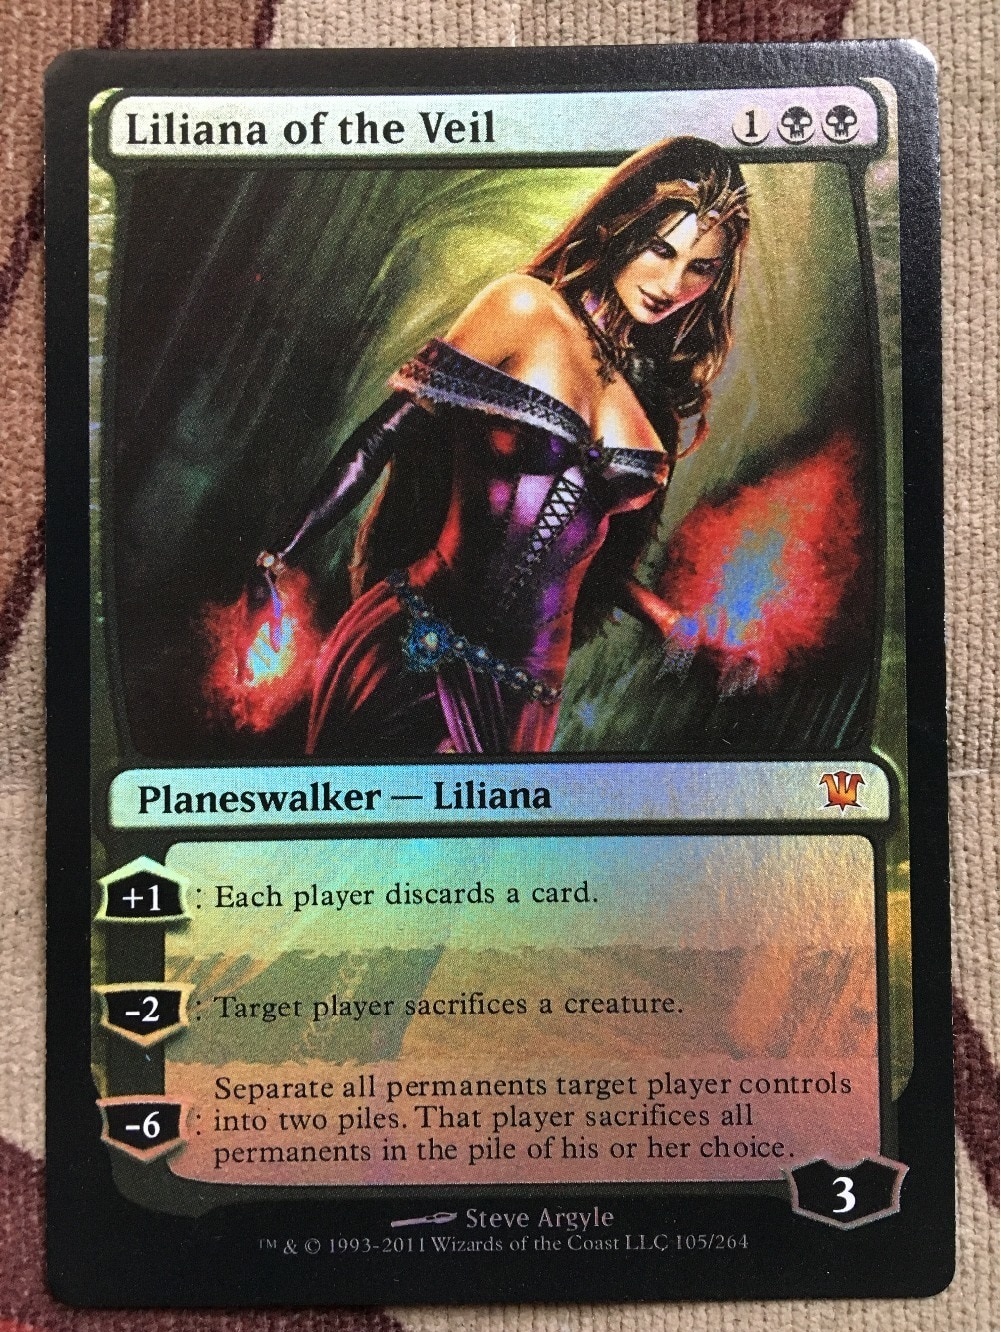 Lilianna of the veil